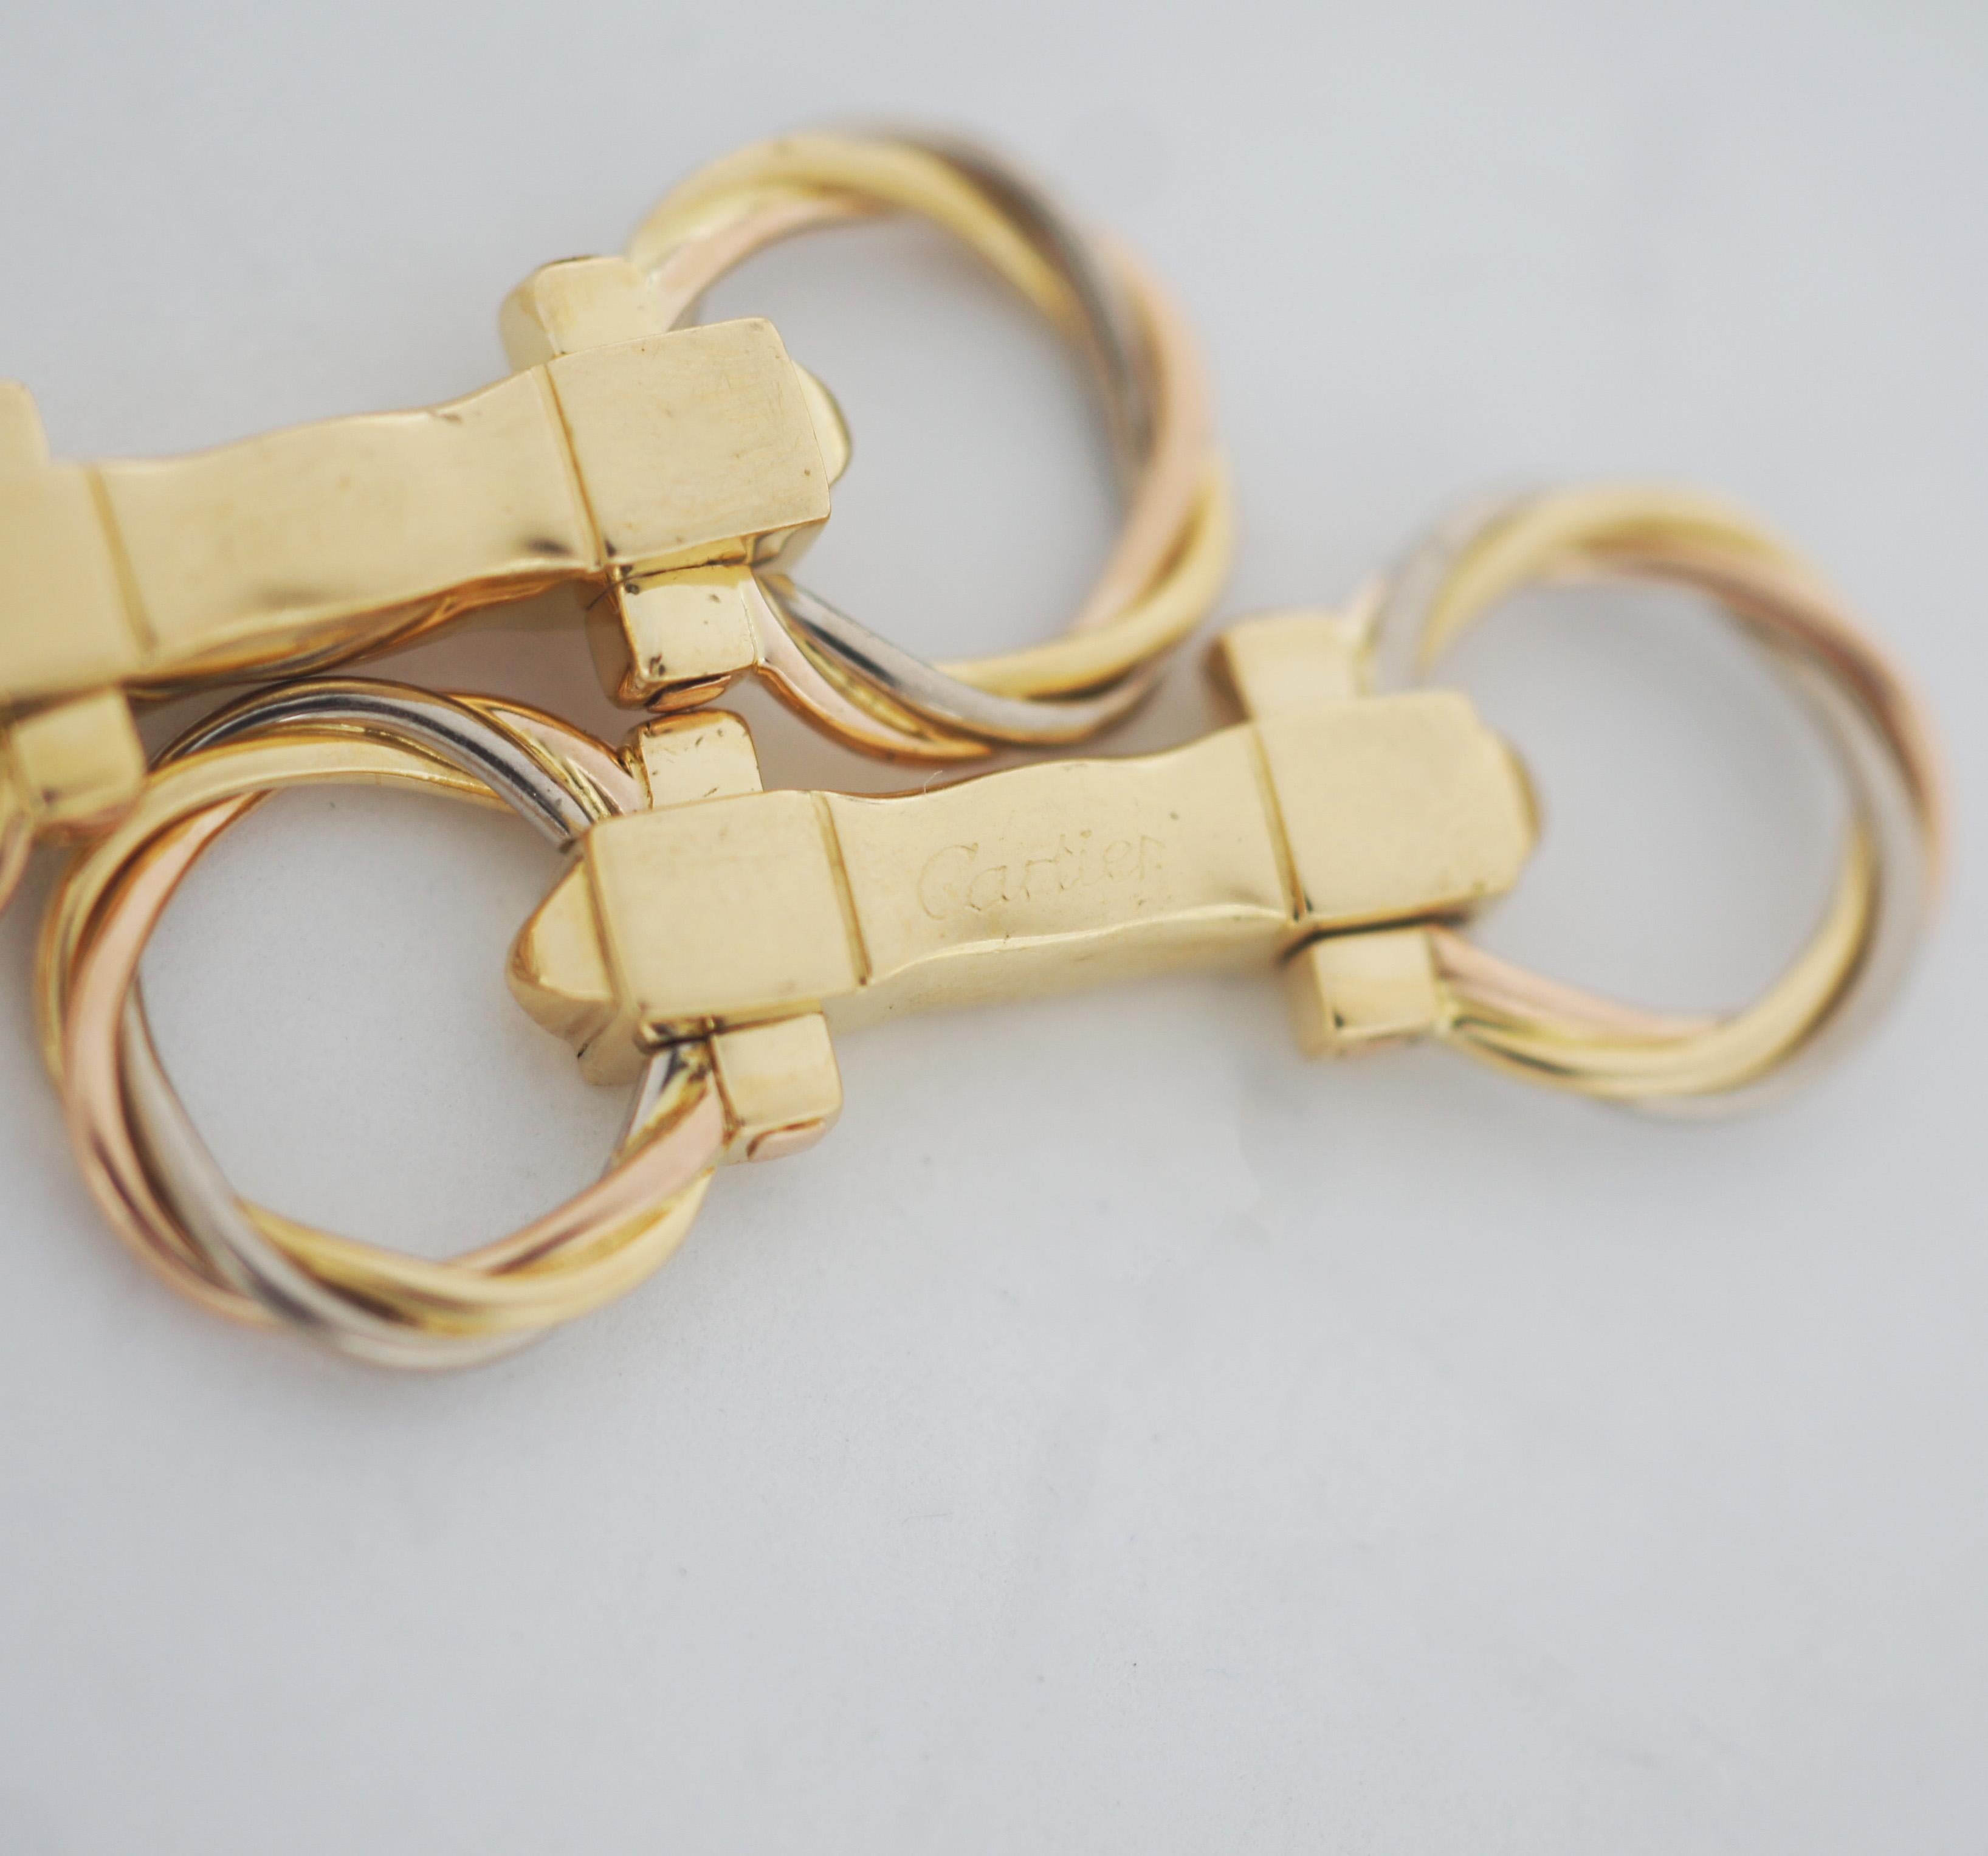 Artikulierte Cartier Trinity Manschettenknöpfe in 3 Goldsorten, bestehend aus 2 gedrehten Ringen in Gelbgold, Roségold und Weißgold.
Signatur: Cartier und nummeriert.
Ca. 1,5